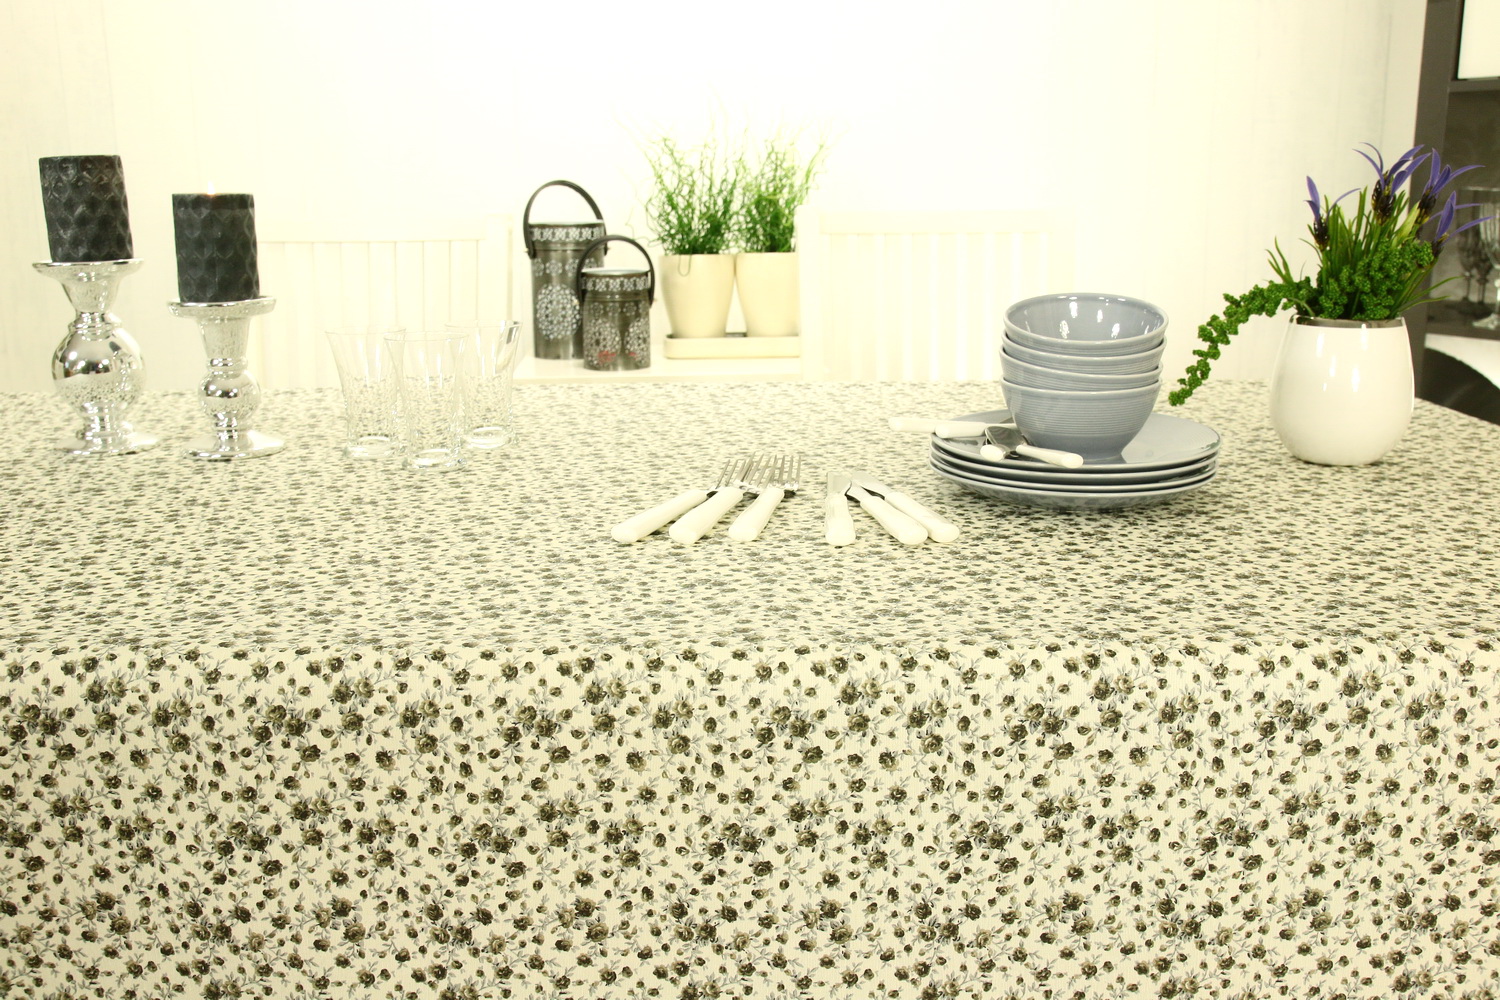 Tischdecke abwaschbar Grau Weiß kleine Blümchen Breite 110 cm